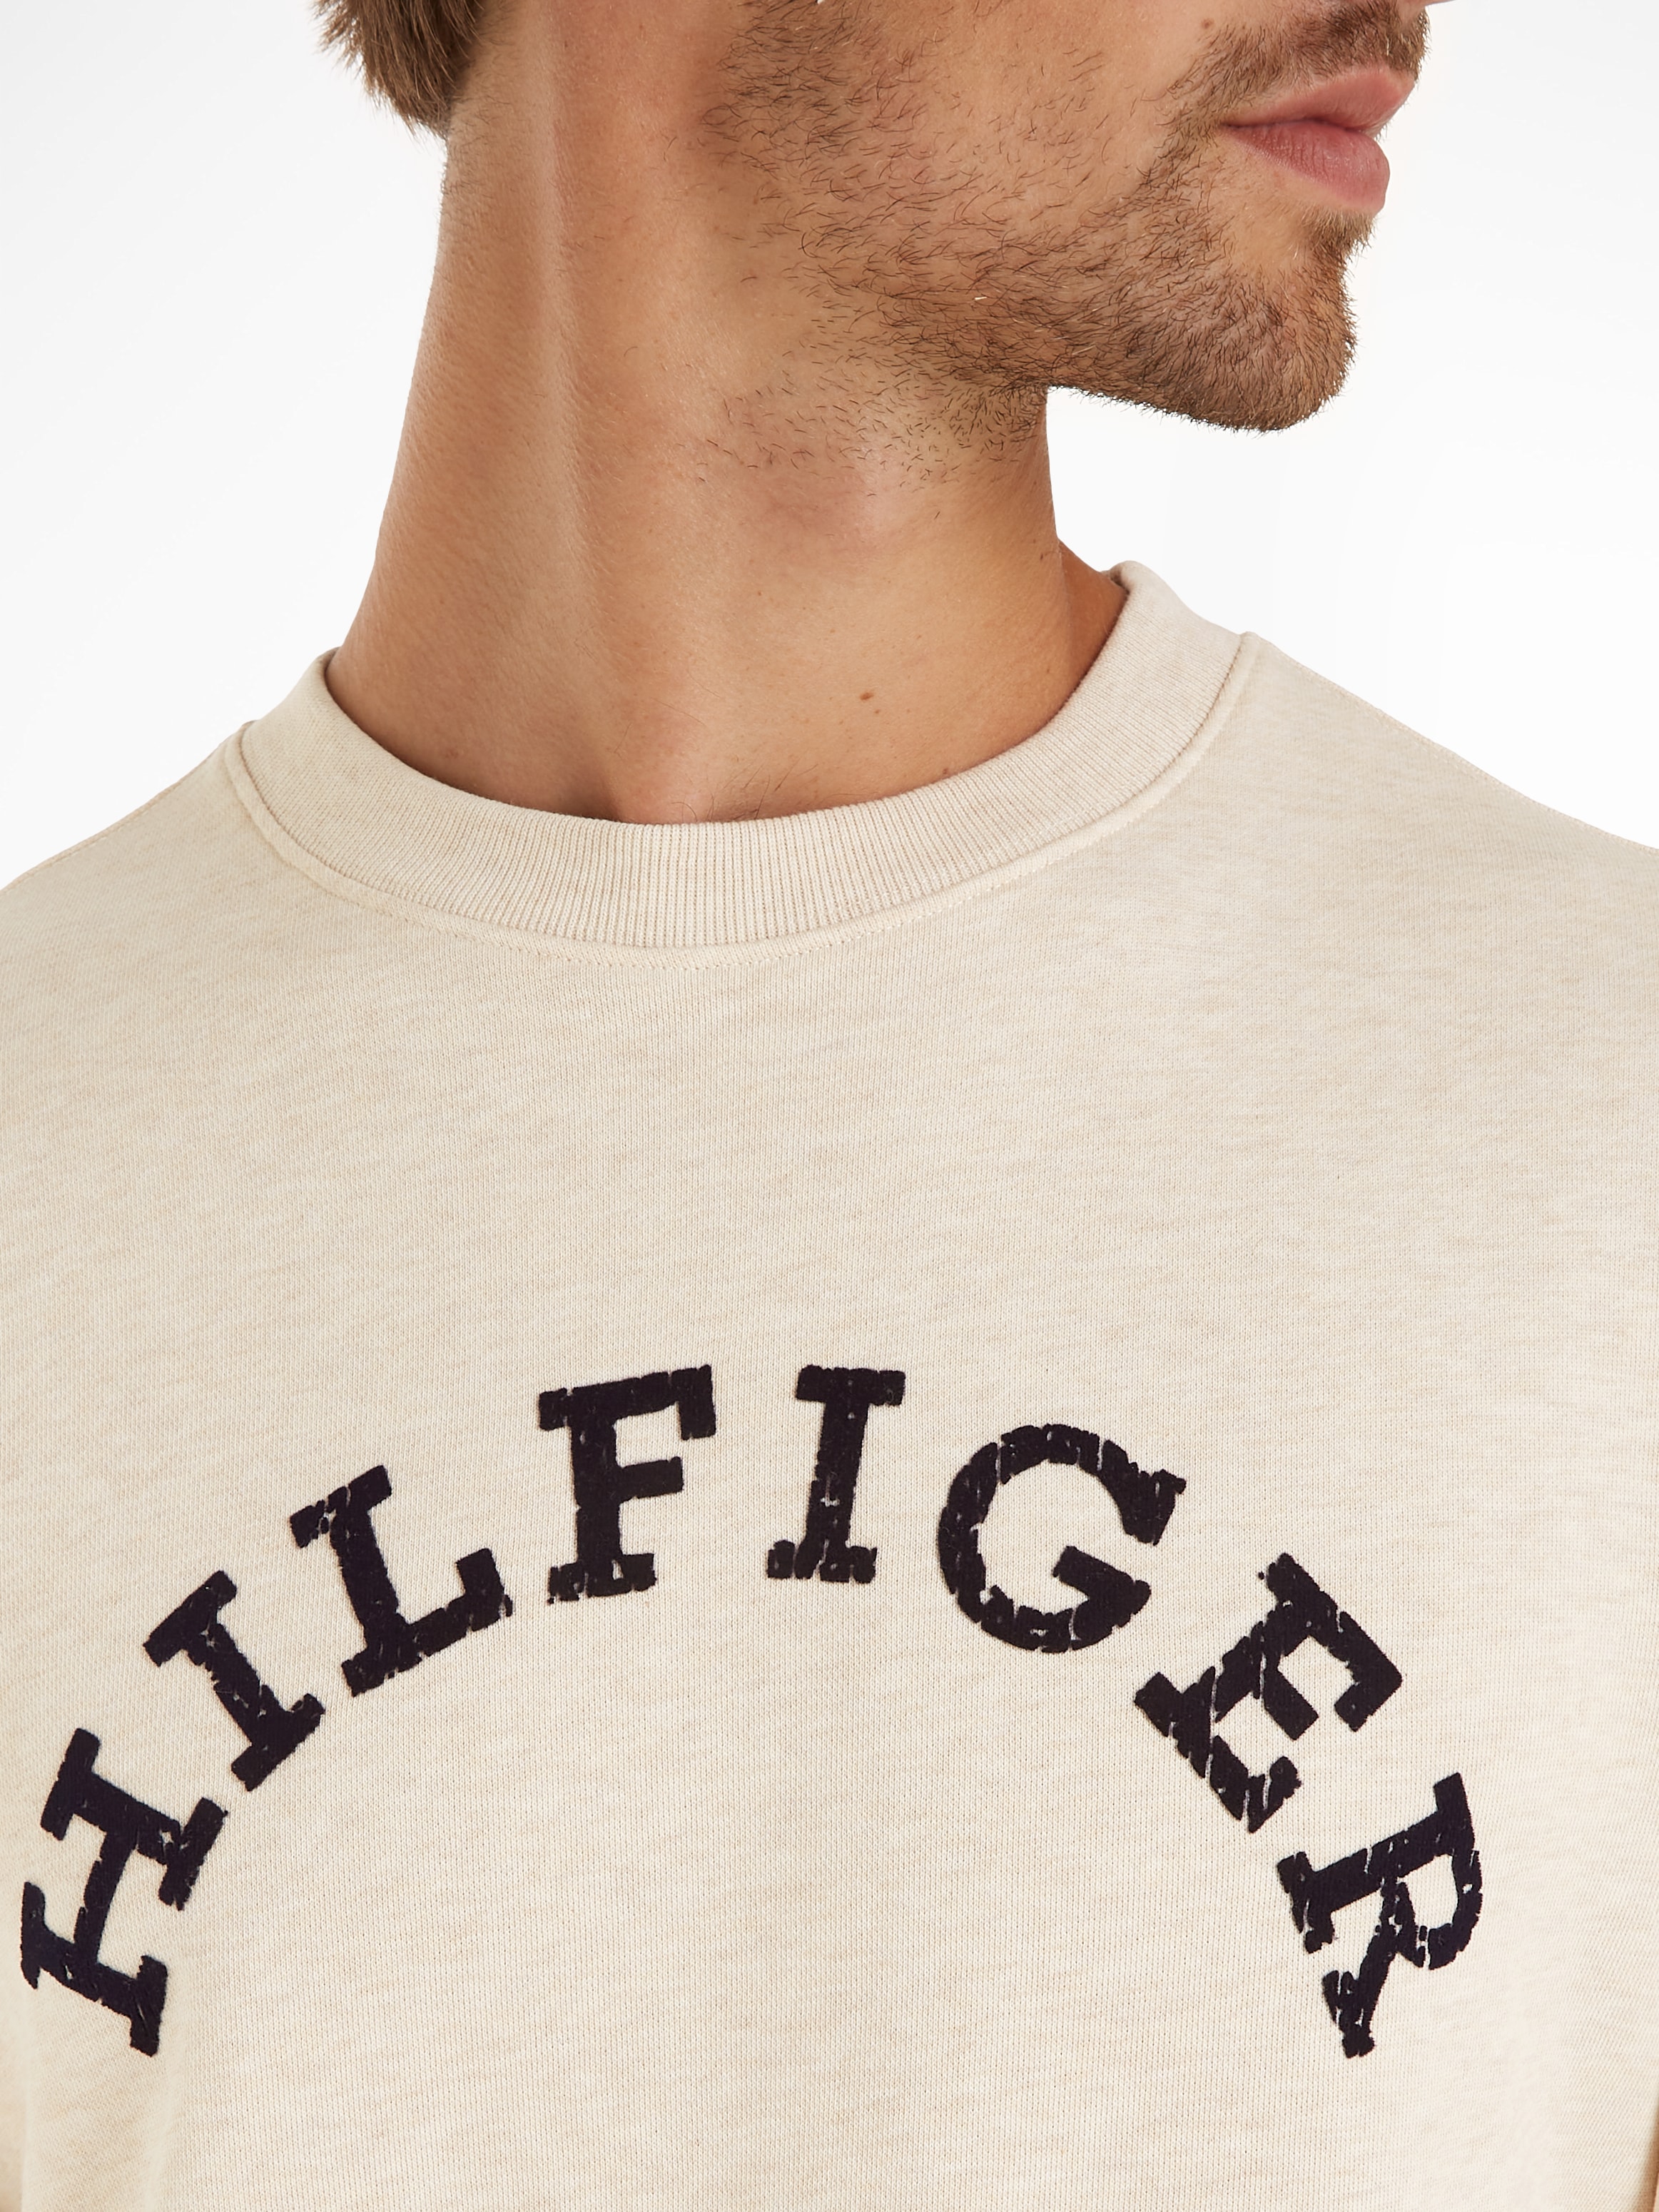 Tommy Hilfiger Sweatshirt »HILFIGER ARCHED HTR SWEATSHIRT«, mit gebrochenem Print